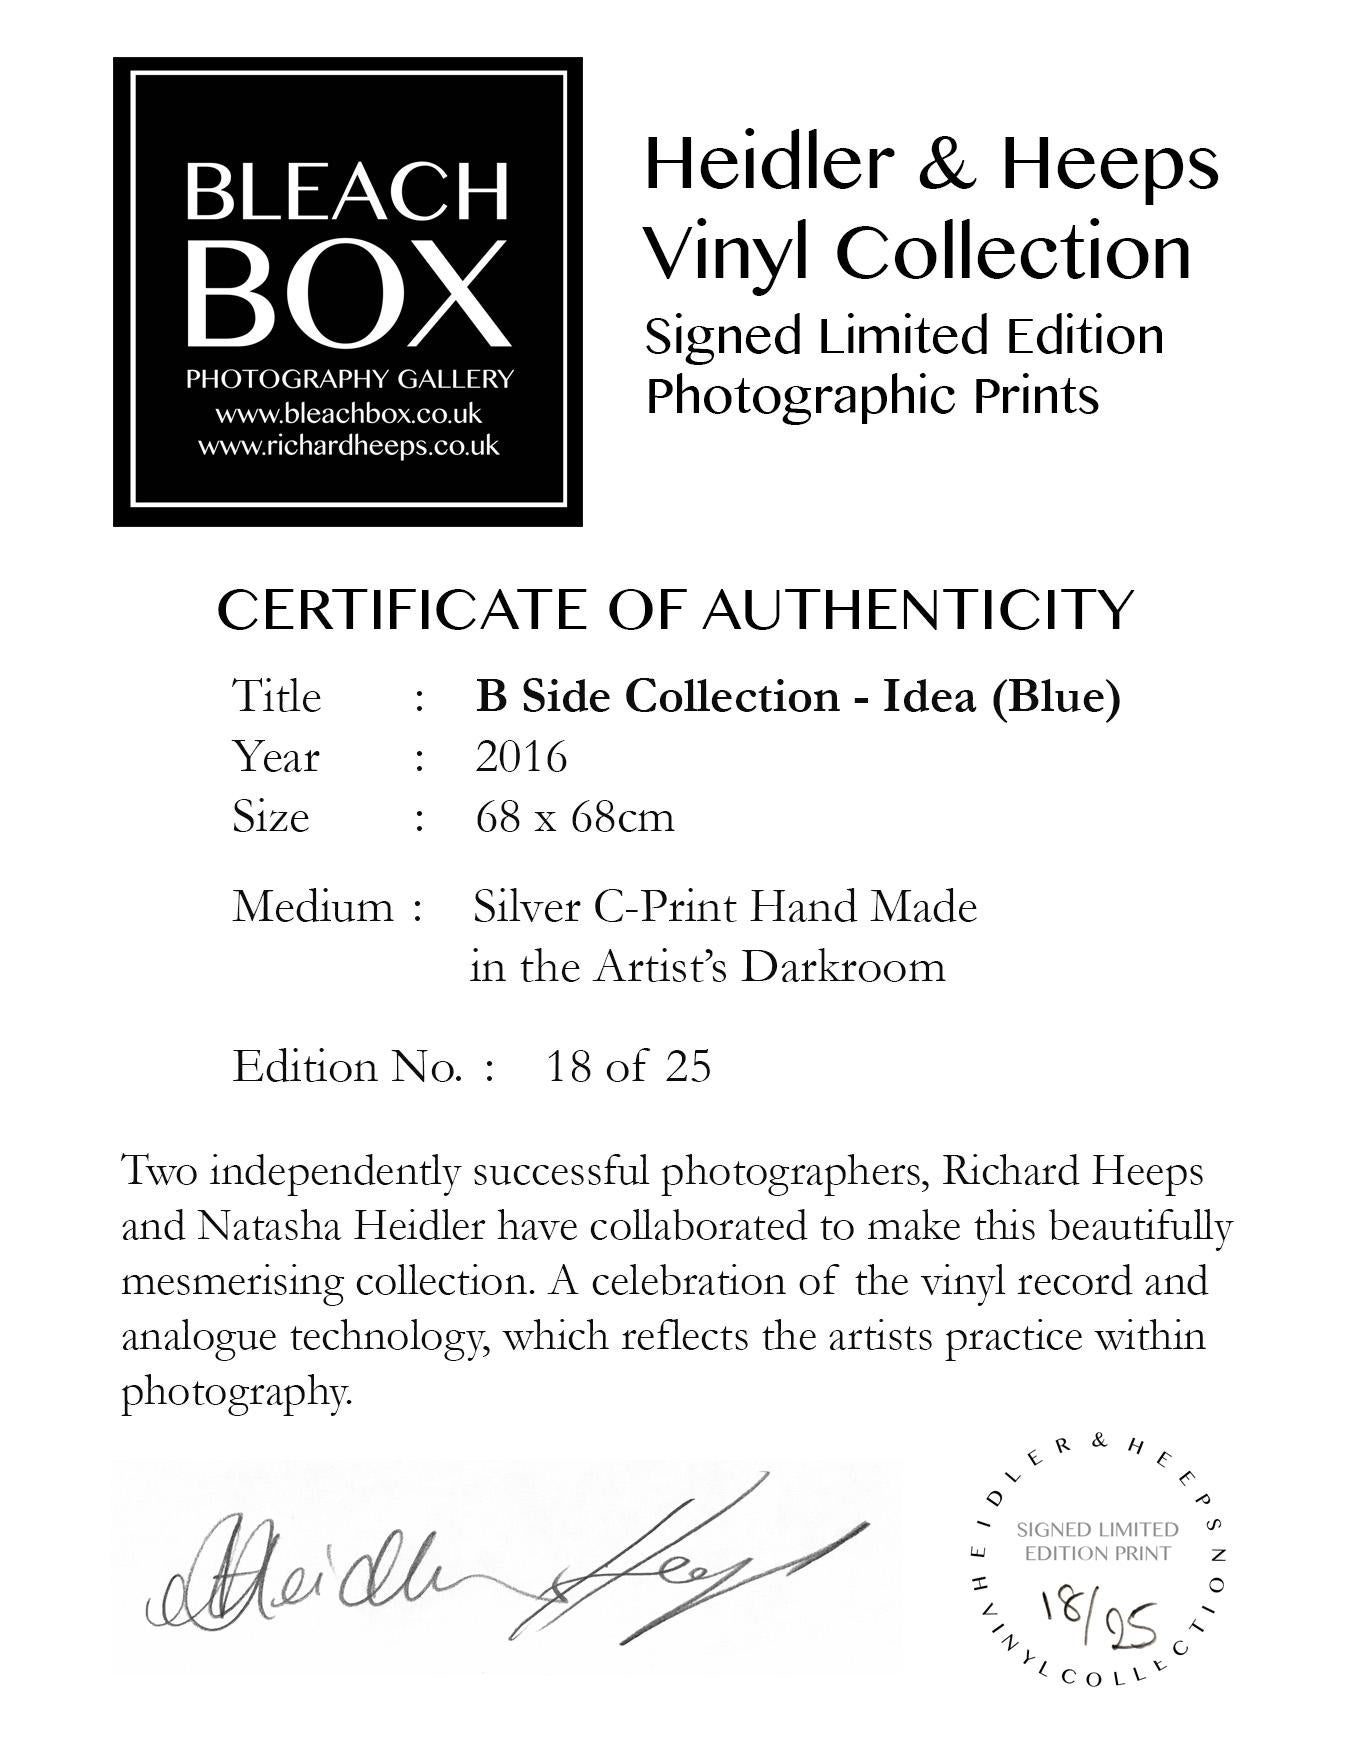 Idea, ein hellblaues Kunstwerk in der Heidler & Heeps B Side Vinyl Collection.
Die renommierten zeitgenössischen Fotografen Richard Heeps und Natasha Heidler haben für diese wunderschöne, faszinierende Kollektion zusammengearbeitet. Eine Hommage an